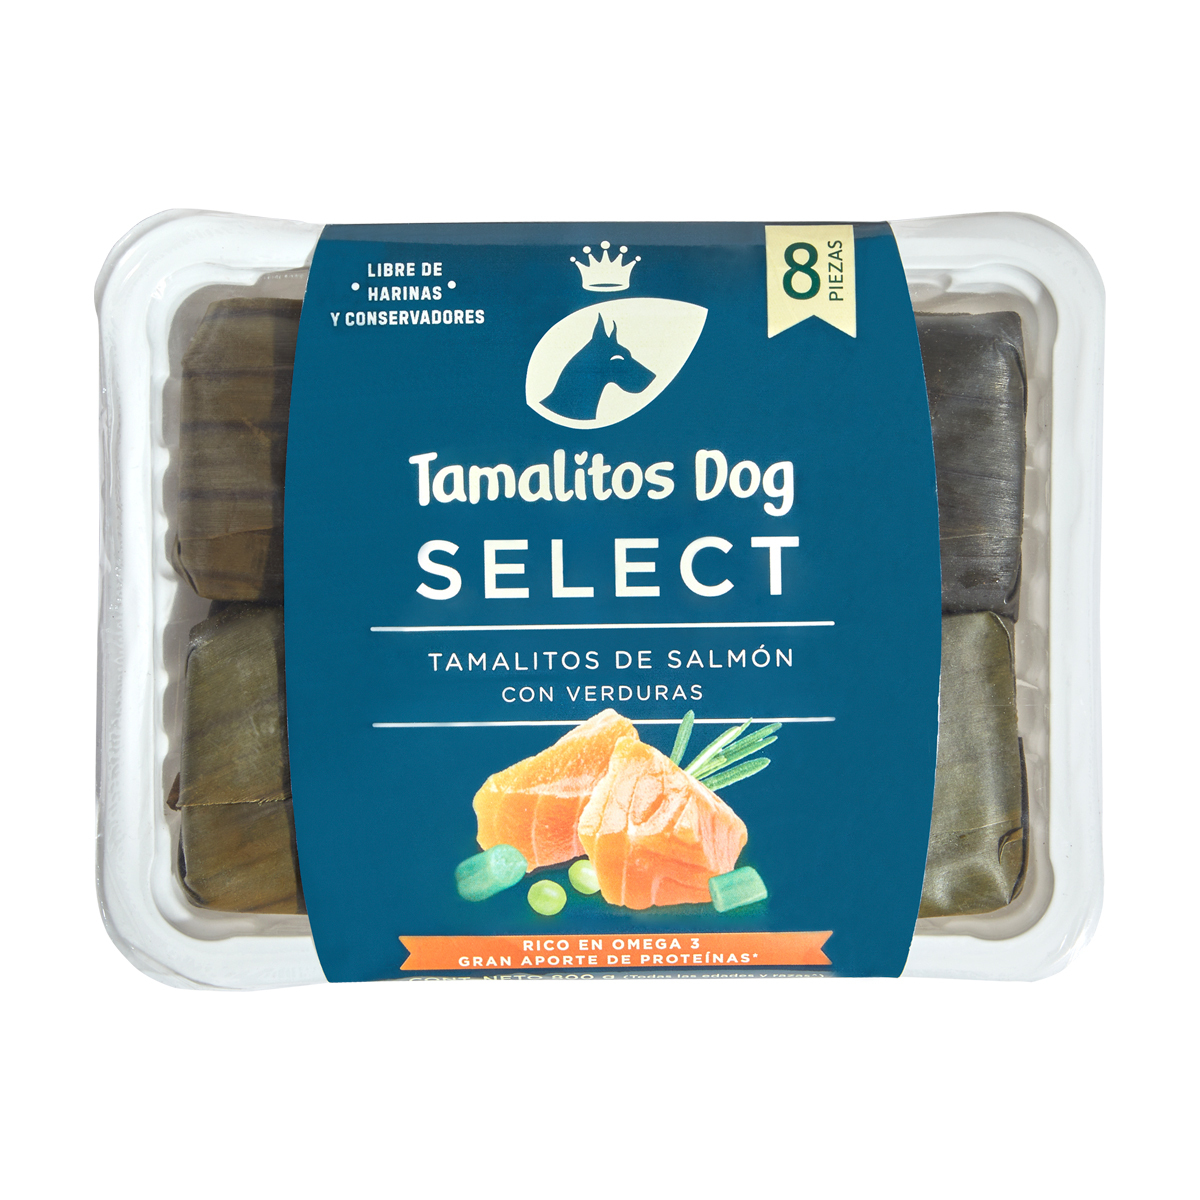 Tamalitos Dog Select Alimento Natural Congelado para Perro Receta Salmón, 800 g